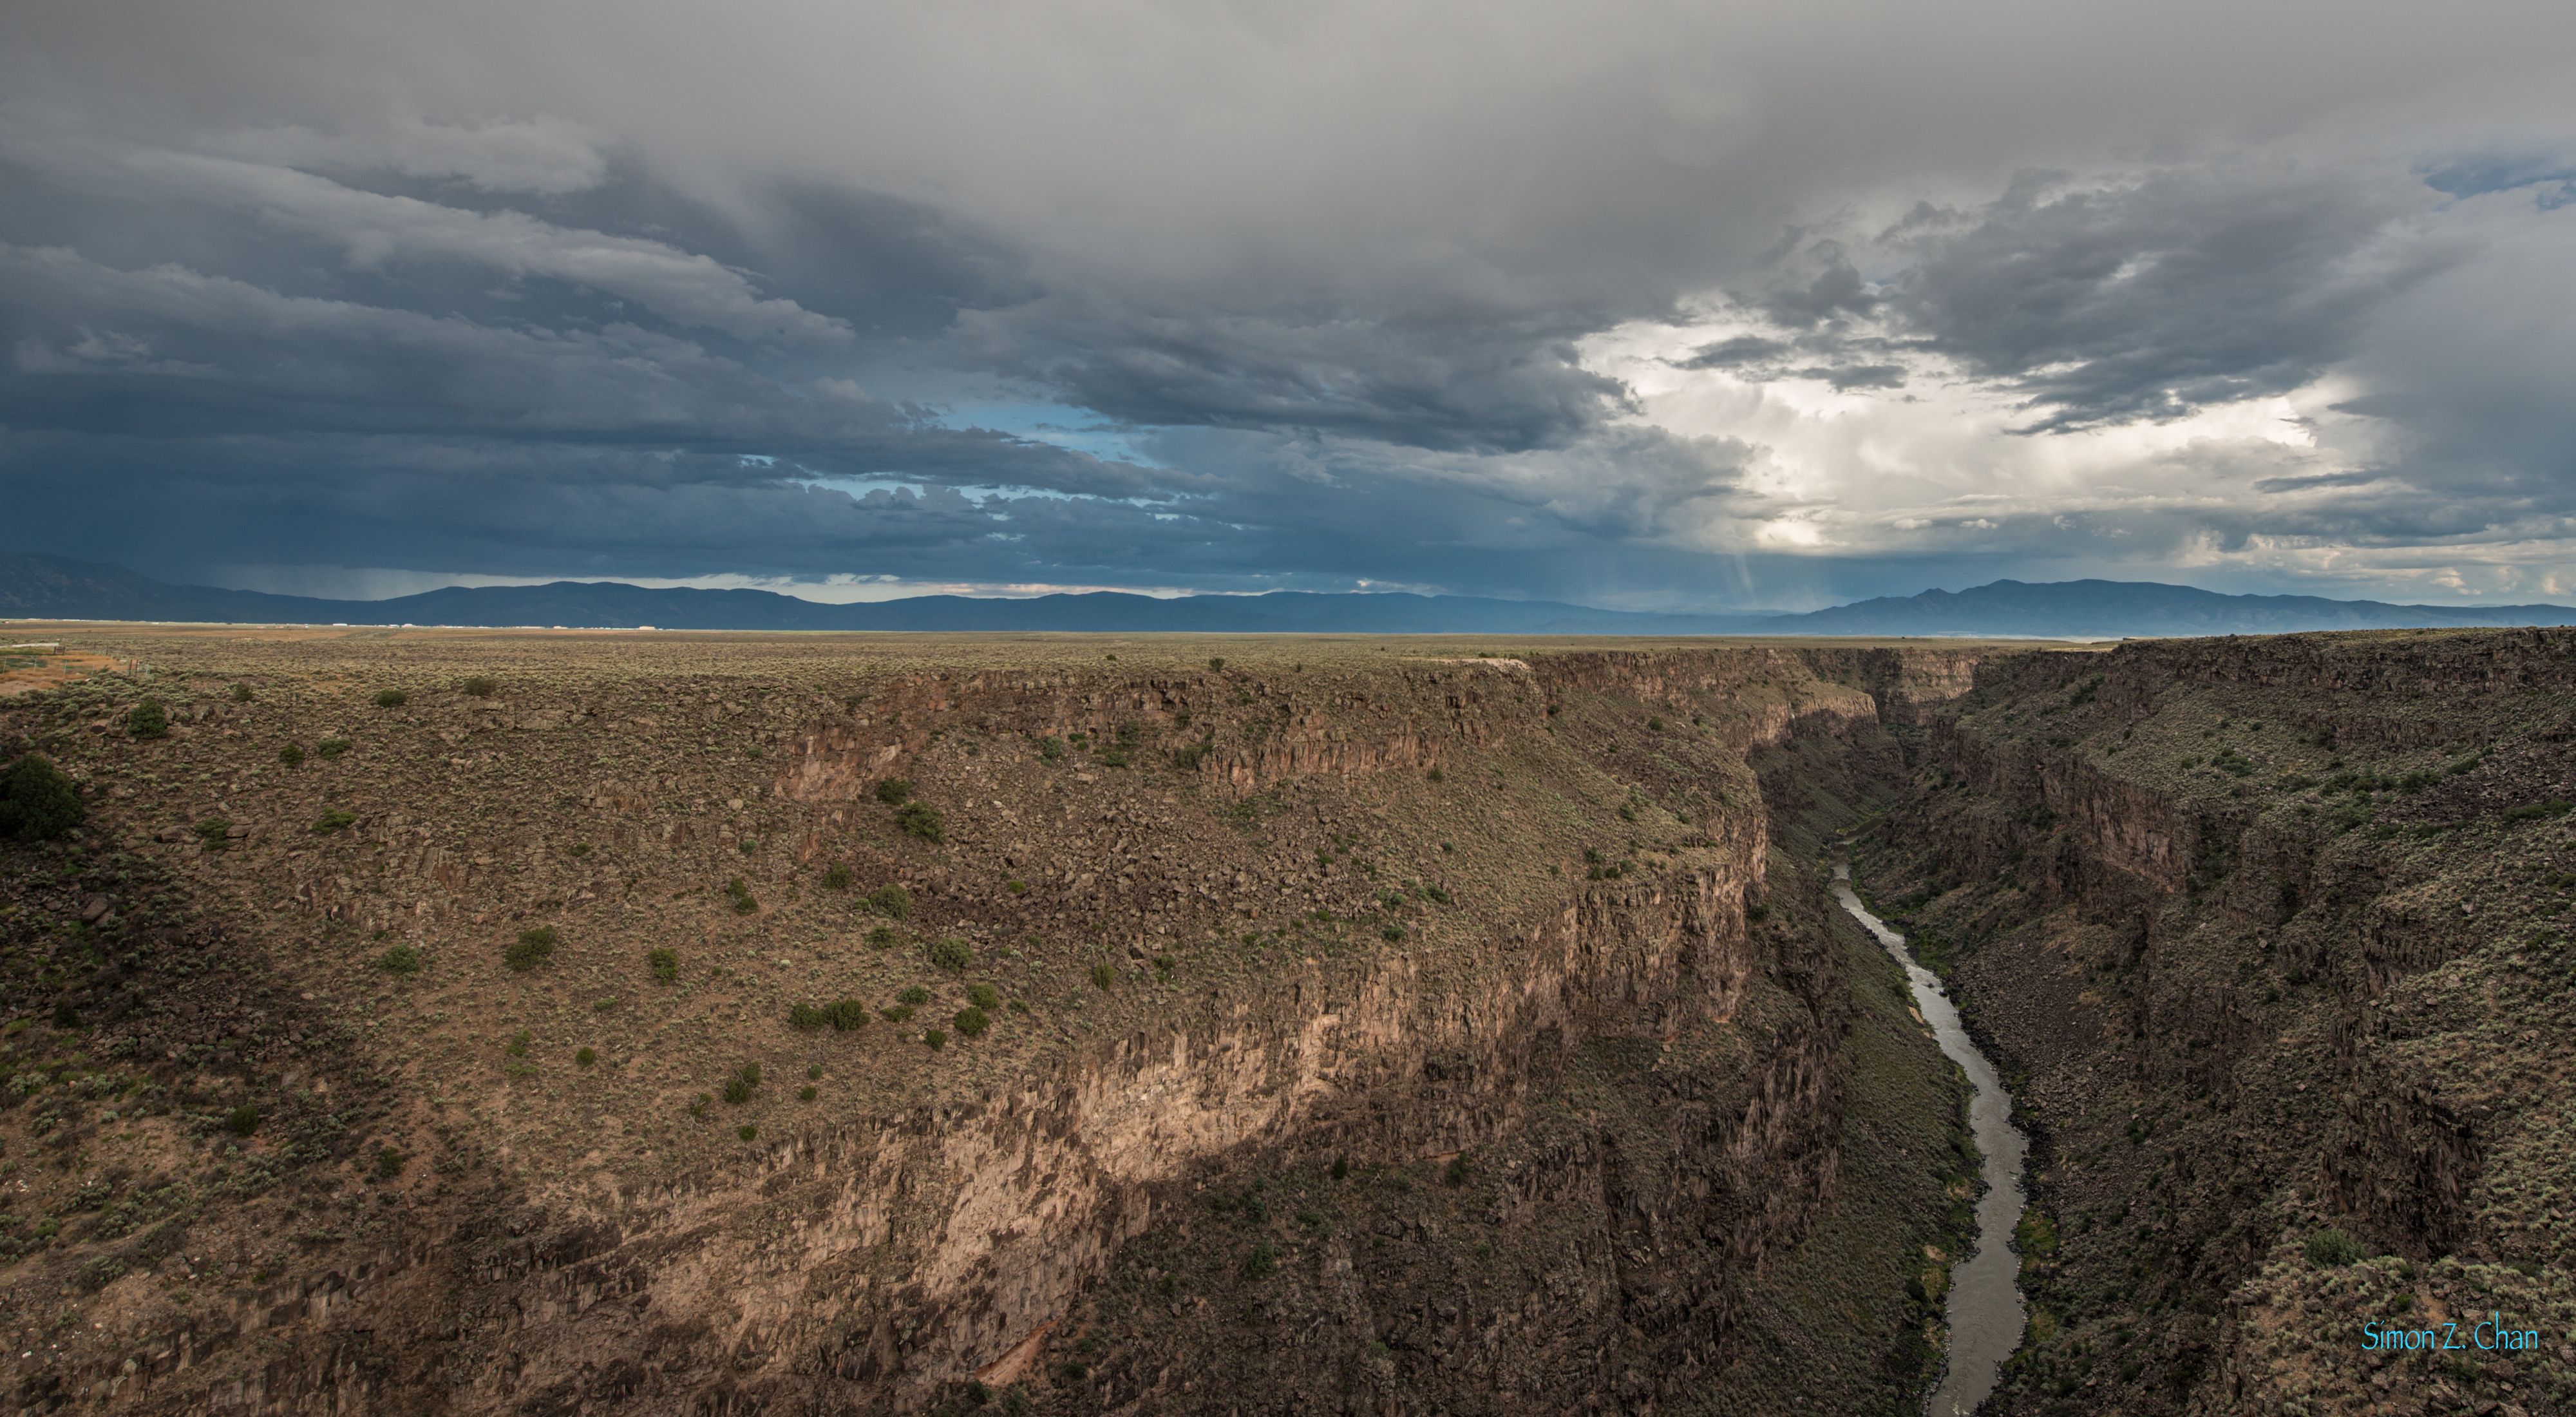 The Rio Grande Valley in New Mexico.